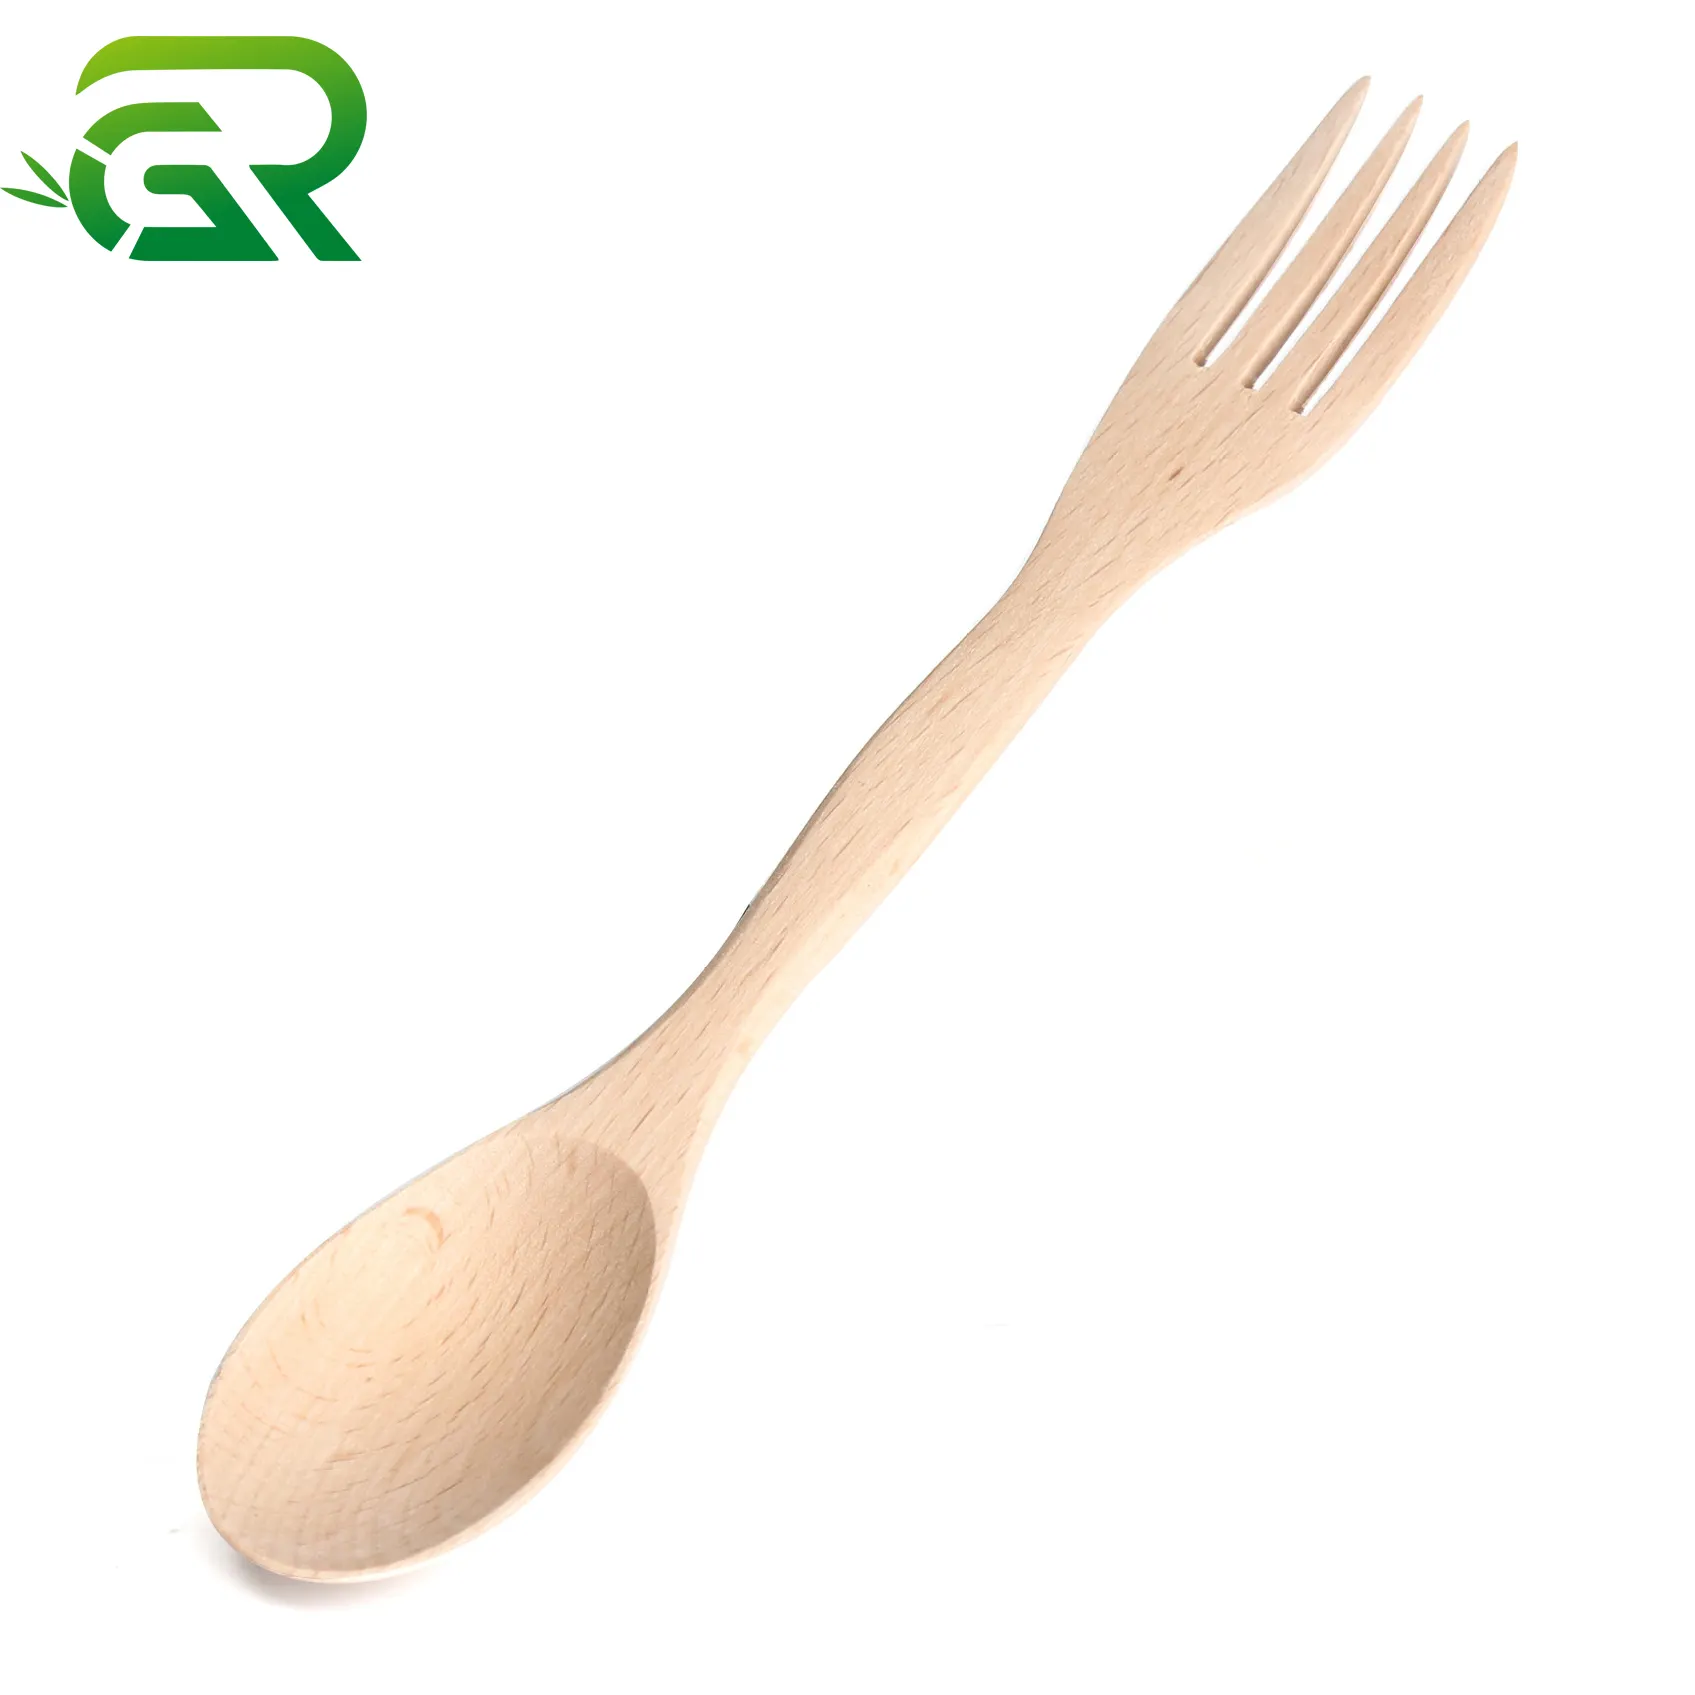 Cucchiai e forchette per uso domestico in legno di faggio 2 in 1 all'ingrosso utensili da cucina cucchiai da minestra di frutta in legno